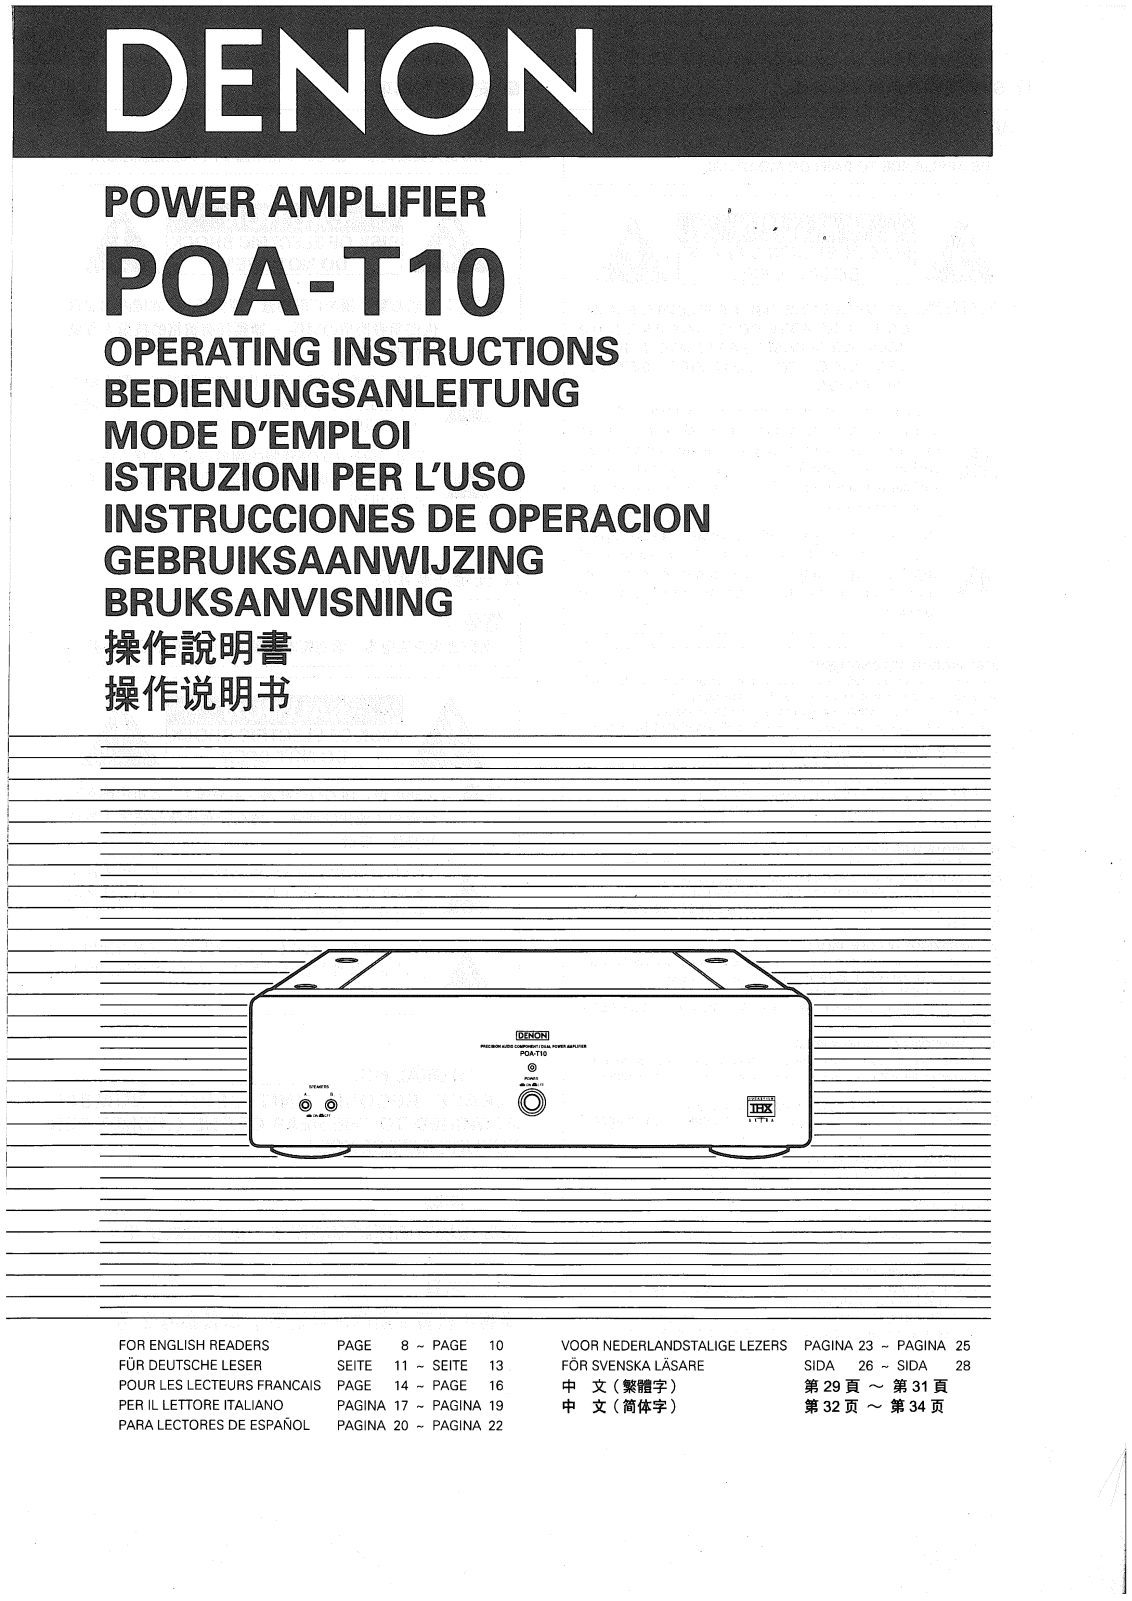 Denon POA-T10 Manual